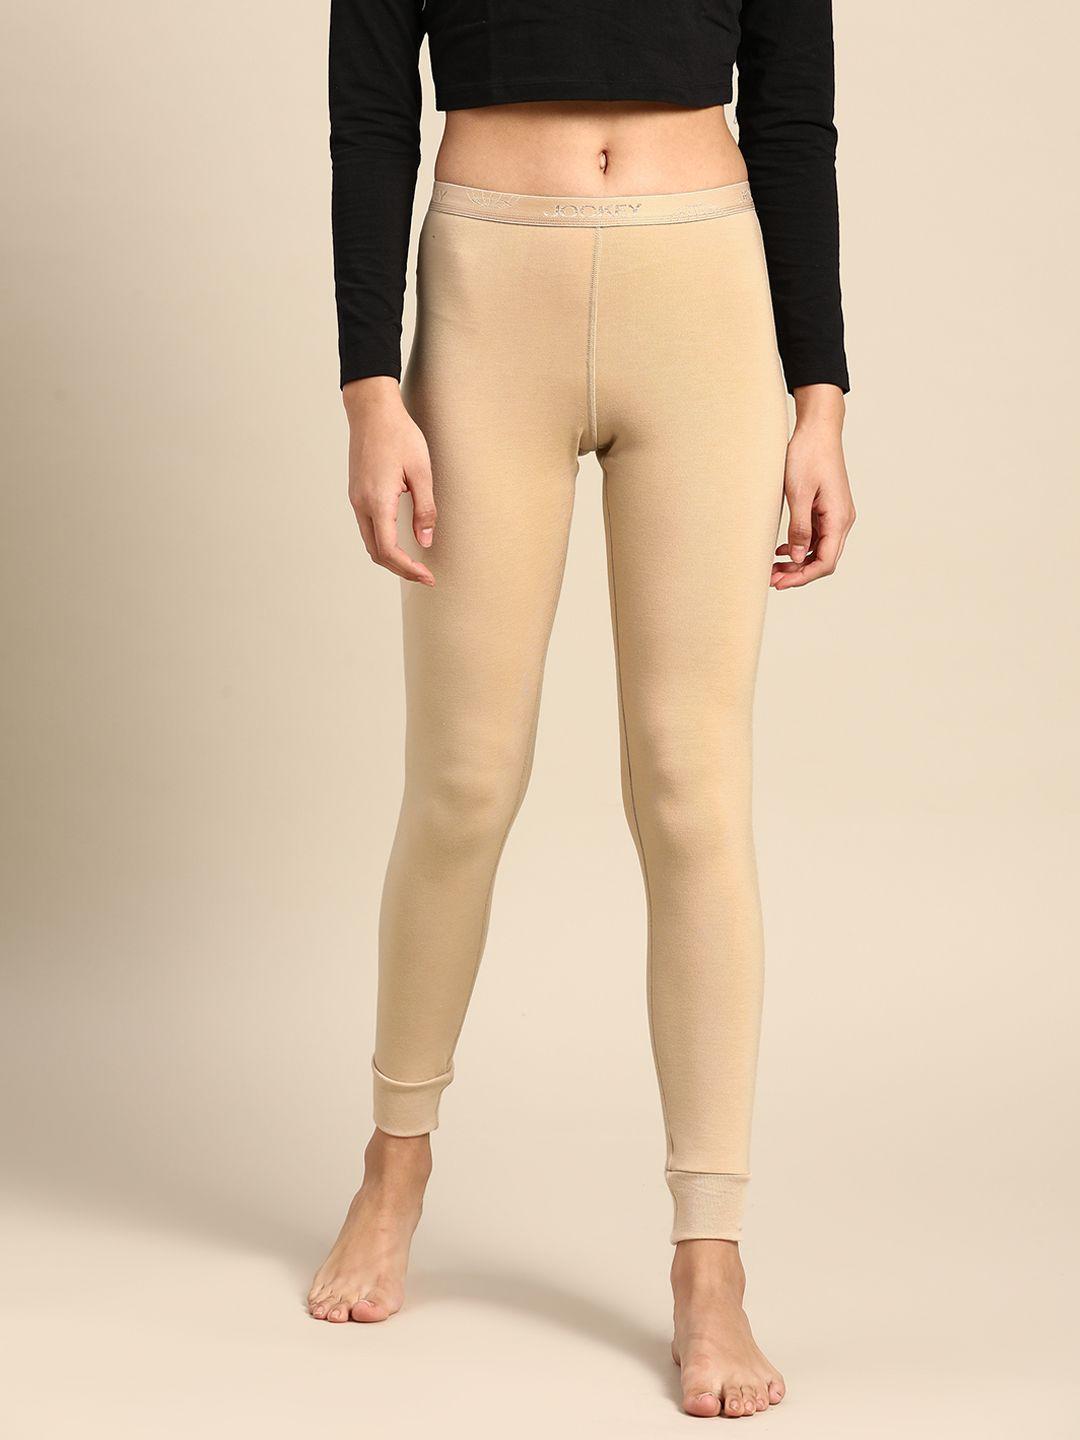 jockey women beige solid slim fit thermal leggings